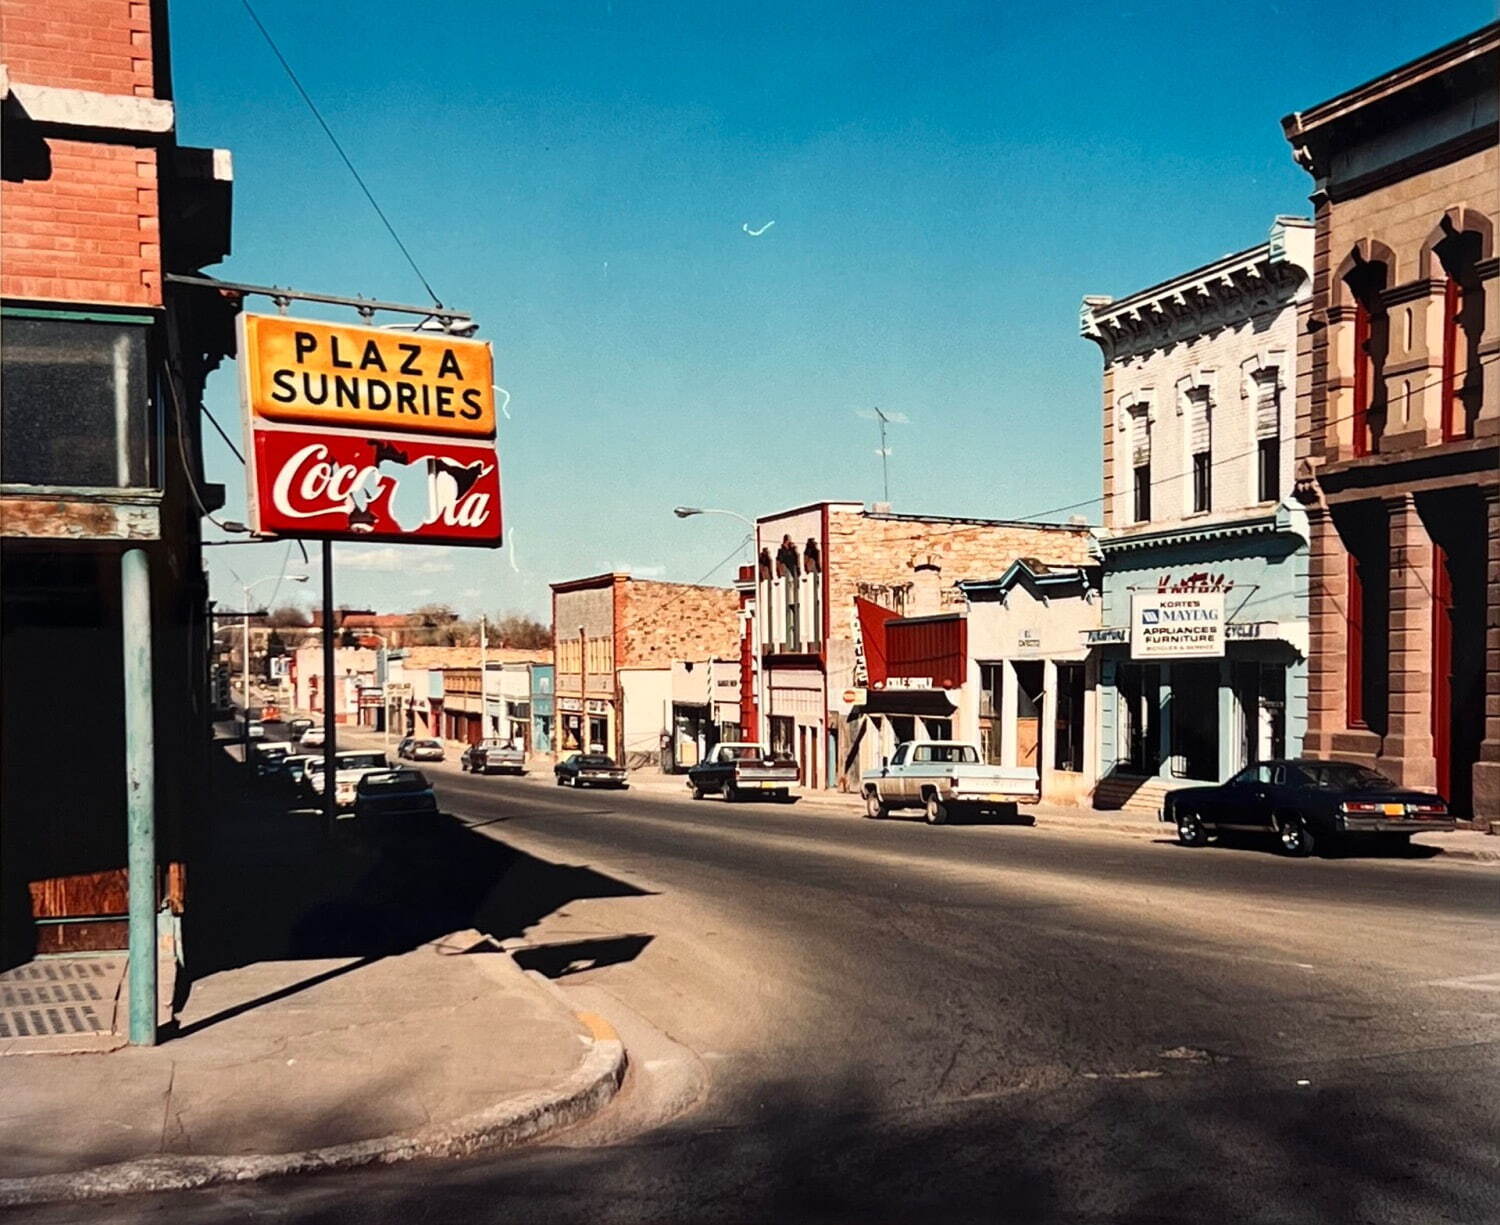 ヴィム・ヴェンダース 《Sun dries, Las Vegas, New Mexico》 1983年
紙、ダイトランスファープリント 31×37cm